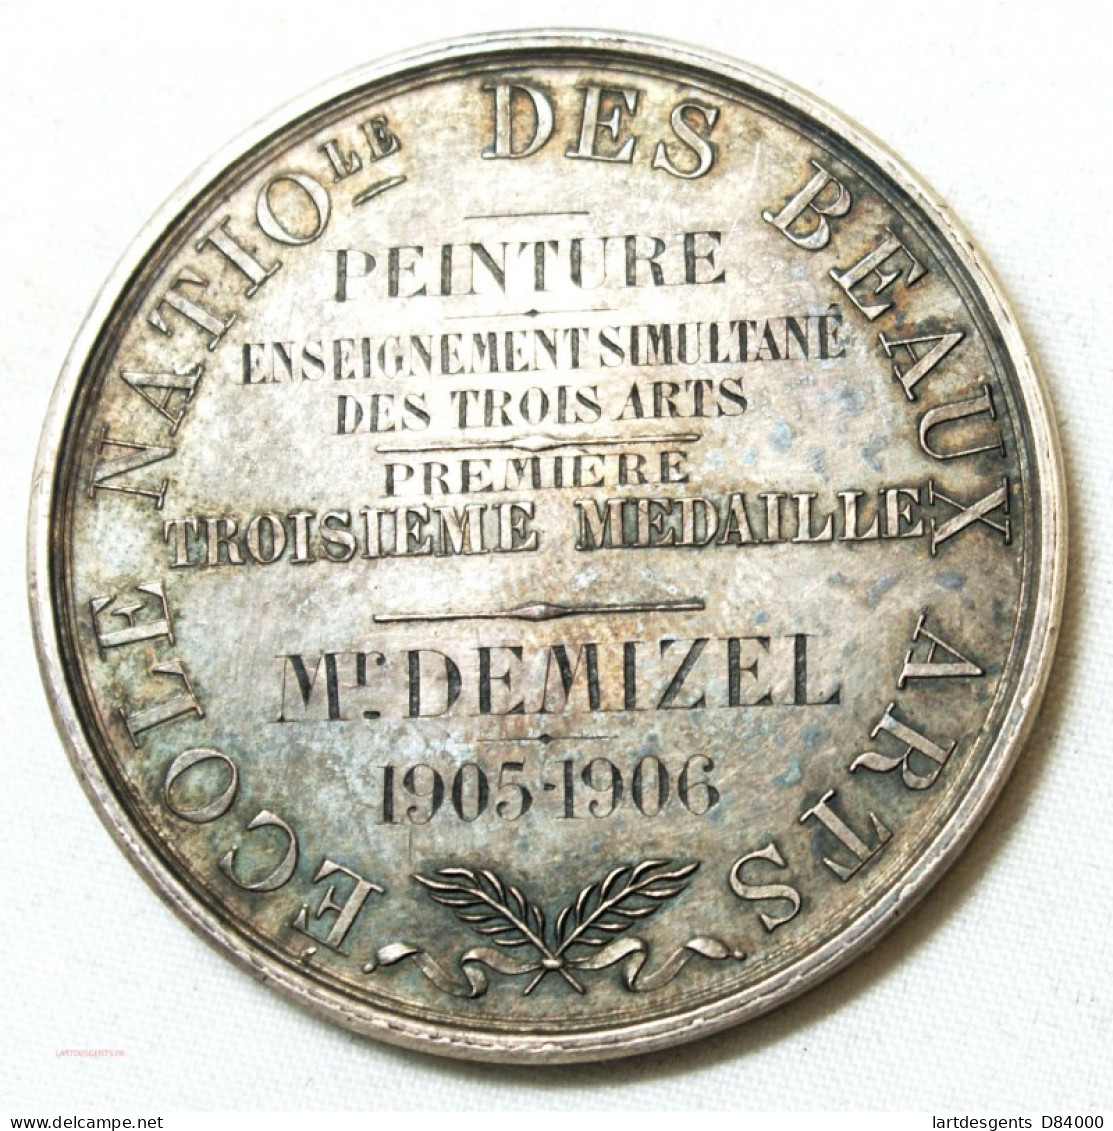 MEDAILLE Ecole Des Beaux Arts Décernée à M. DEMIZEL 1905-06 Par E. GATTEAUX. F. - Professionals/Firms